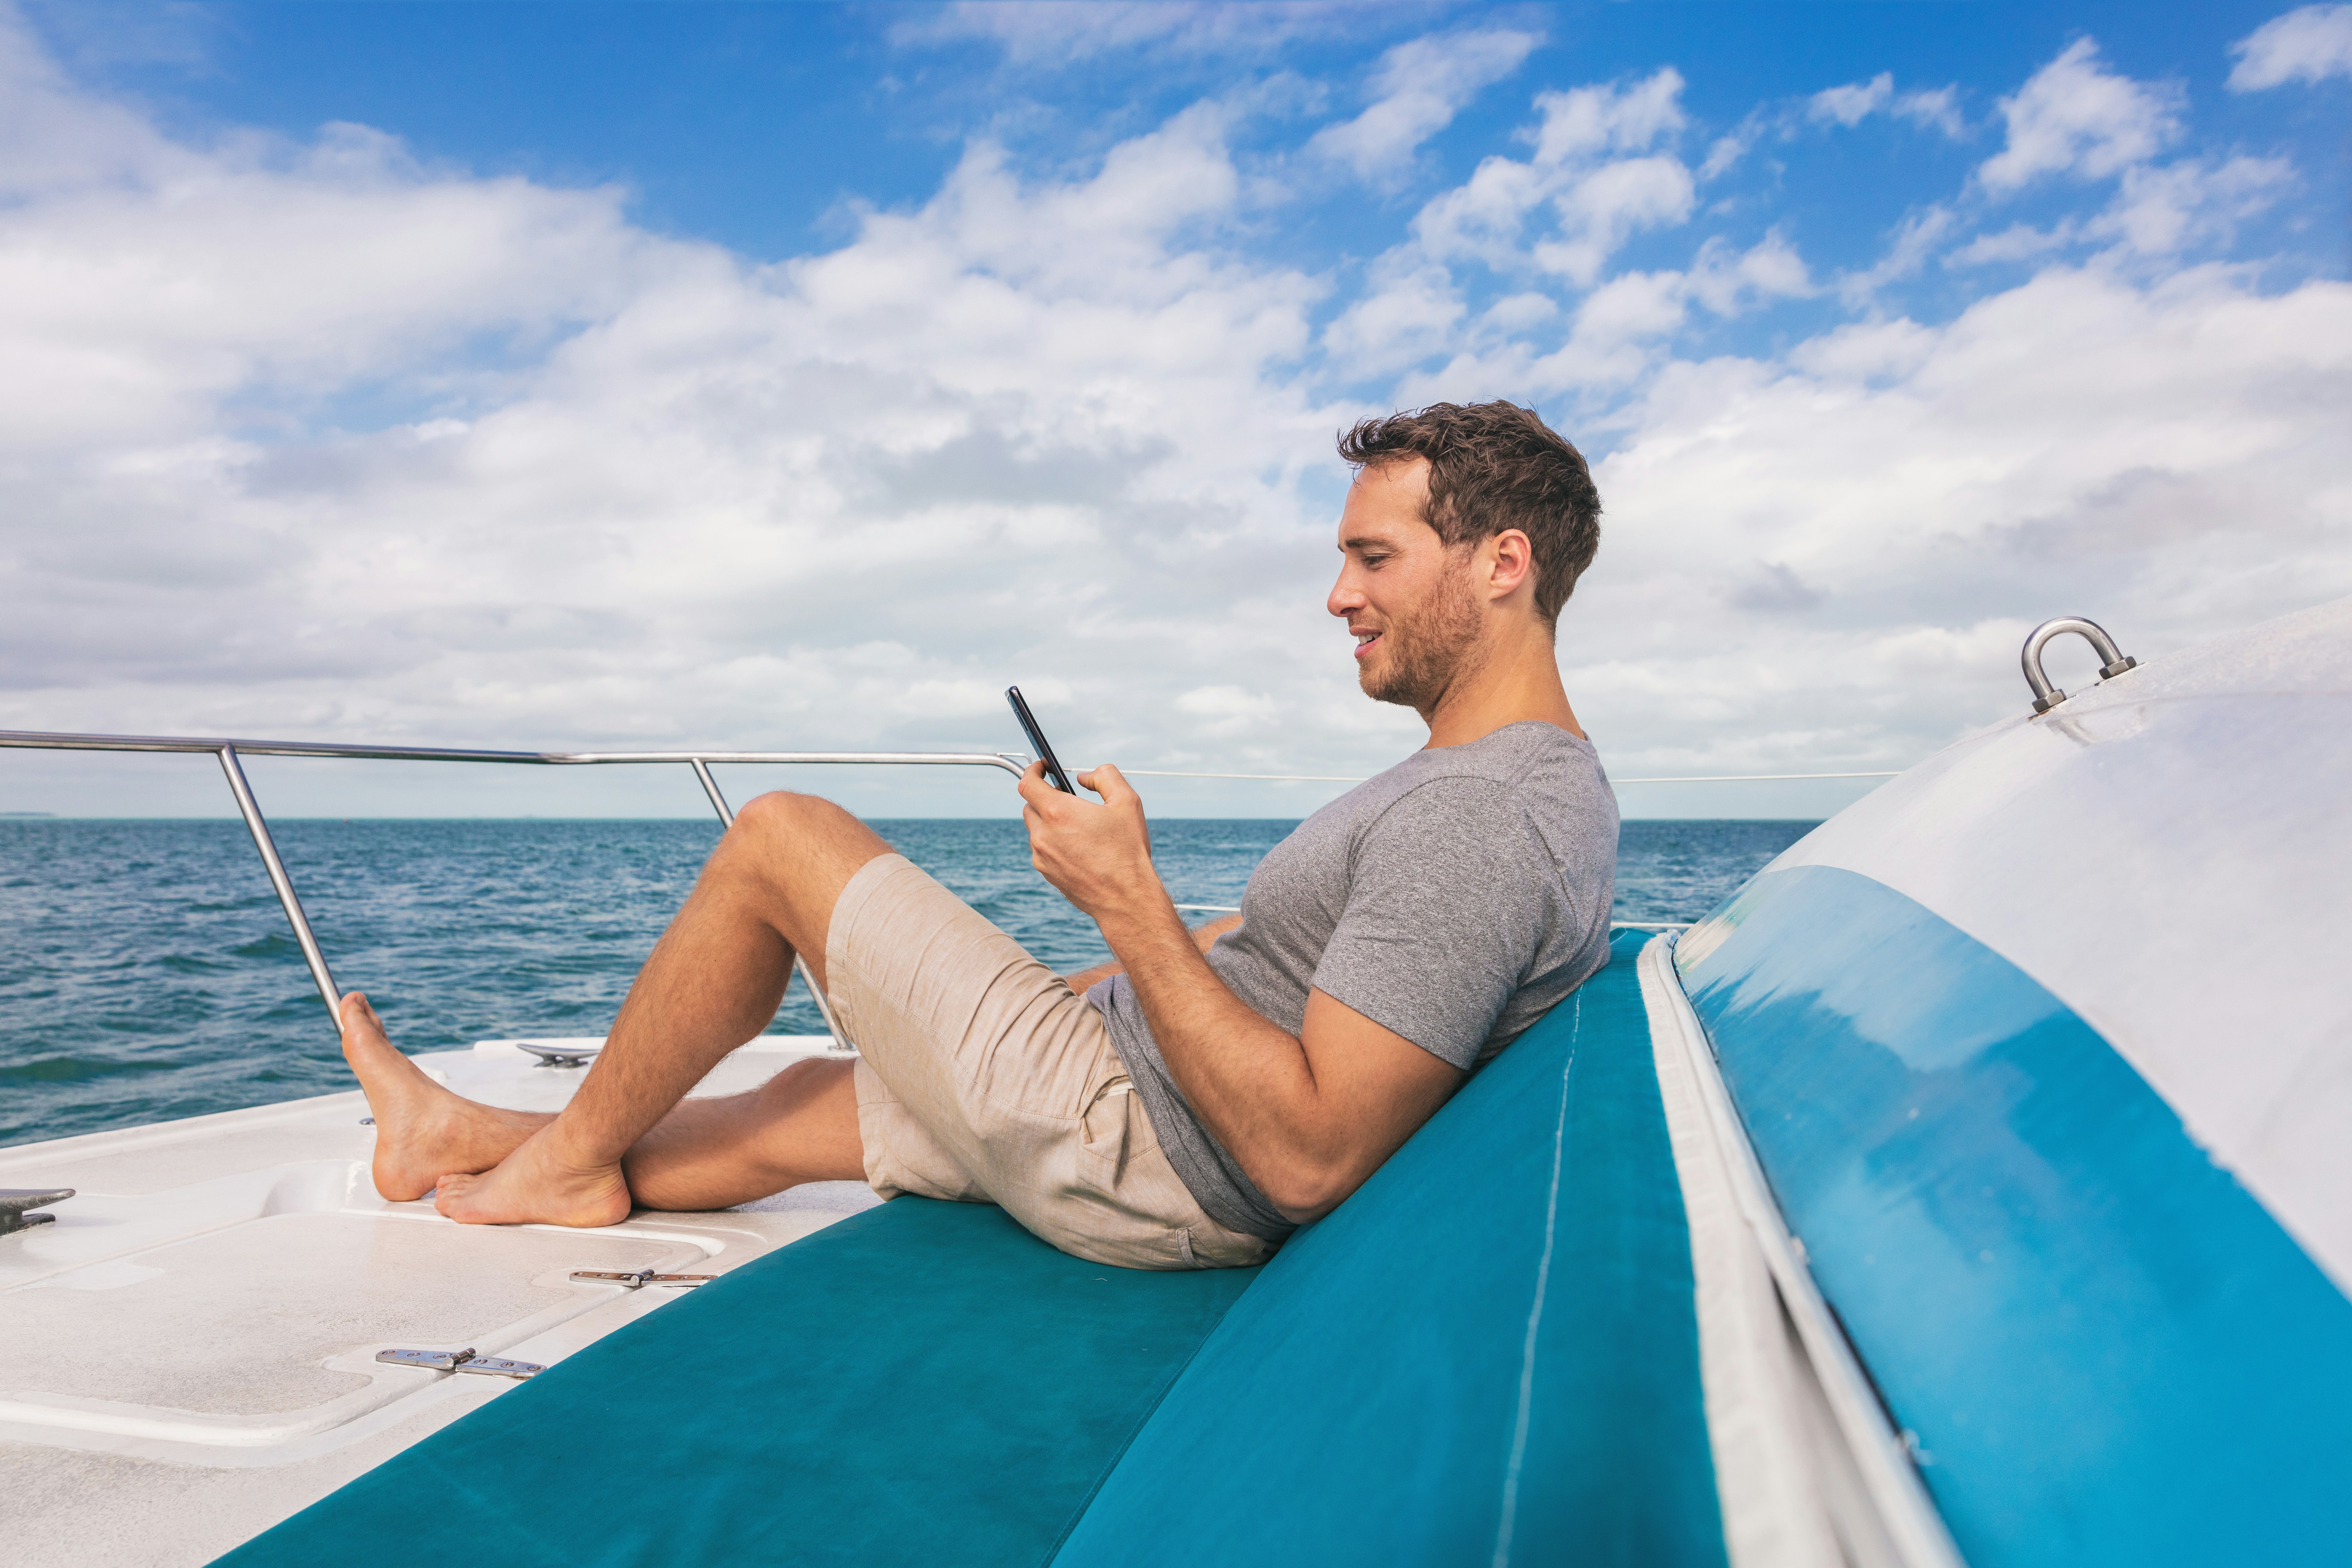 Loď muž pomocí mobilního phoneu SMS και δορυφορικό internet και zároveň relaxovat na palubě jachty luxusní životní style.